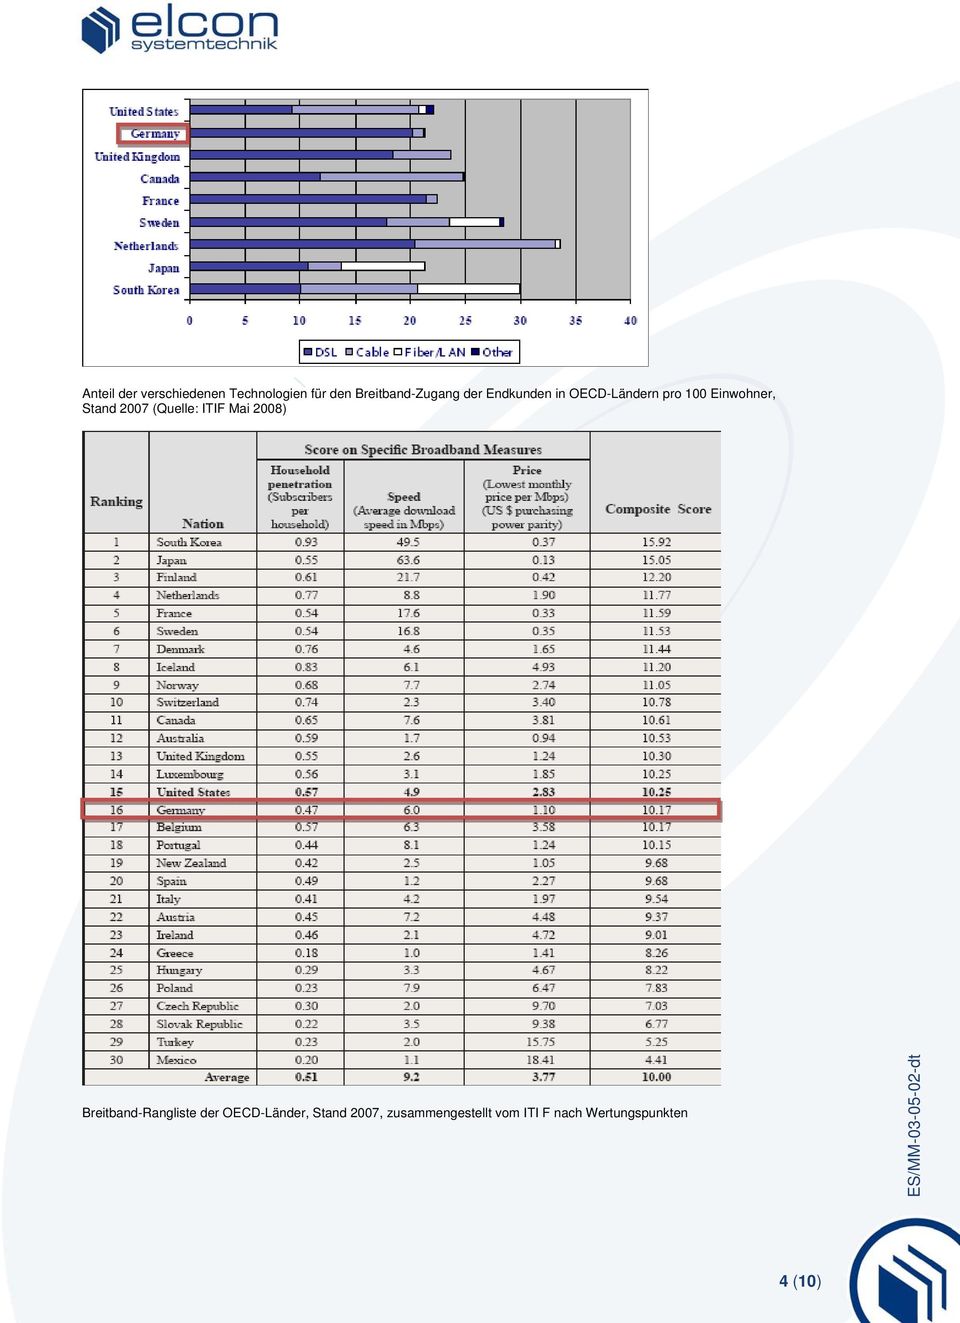 (Quelle: ITIF Mai 2008) Breitband-Rangliste der OECD-Länder,